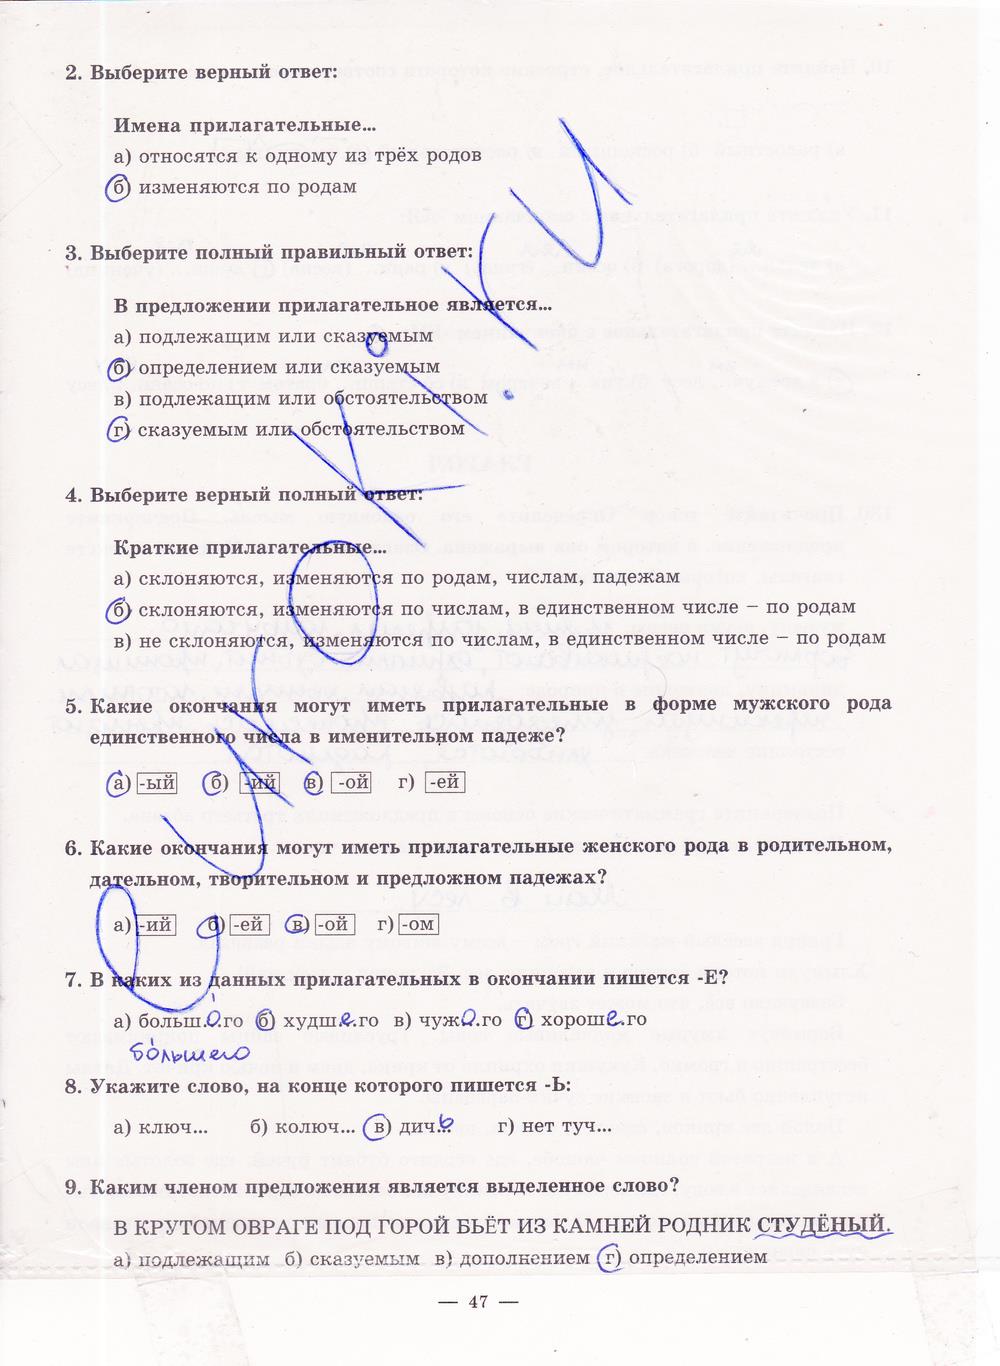 гдз 5 класс рабочая тетрадь часть 2 страница 47 русский язык Богданова